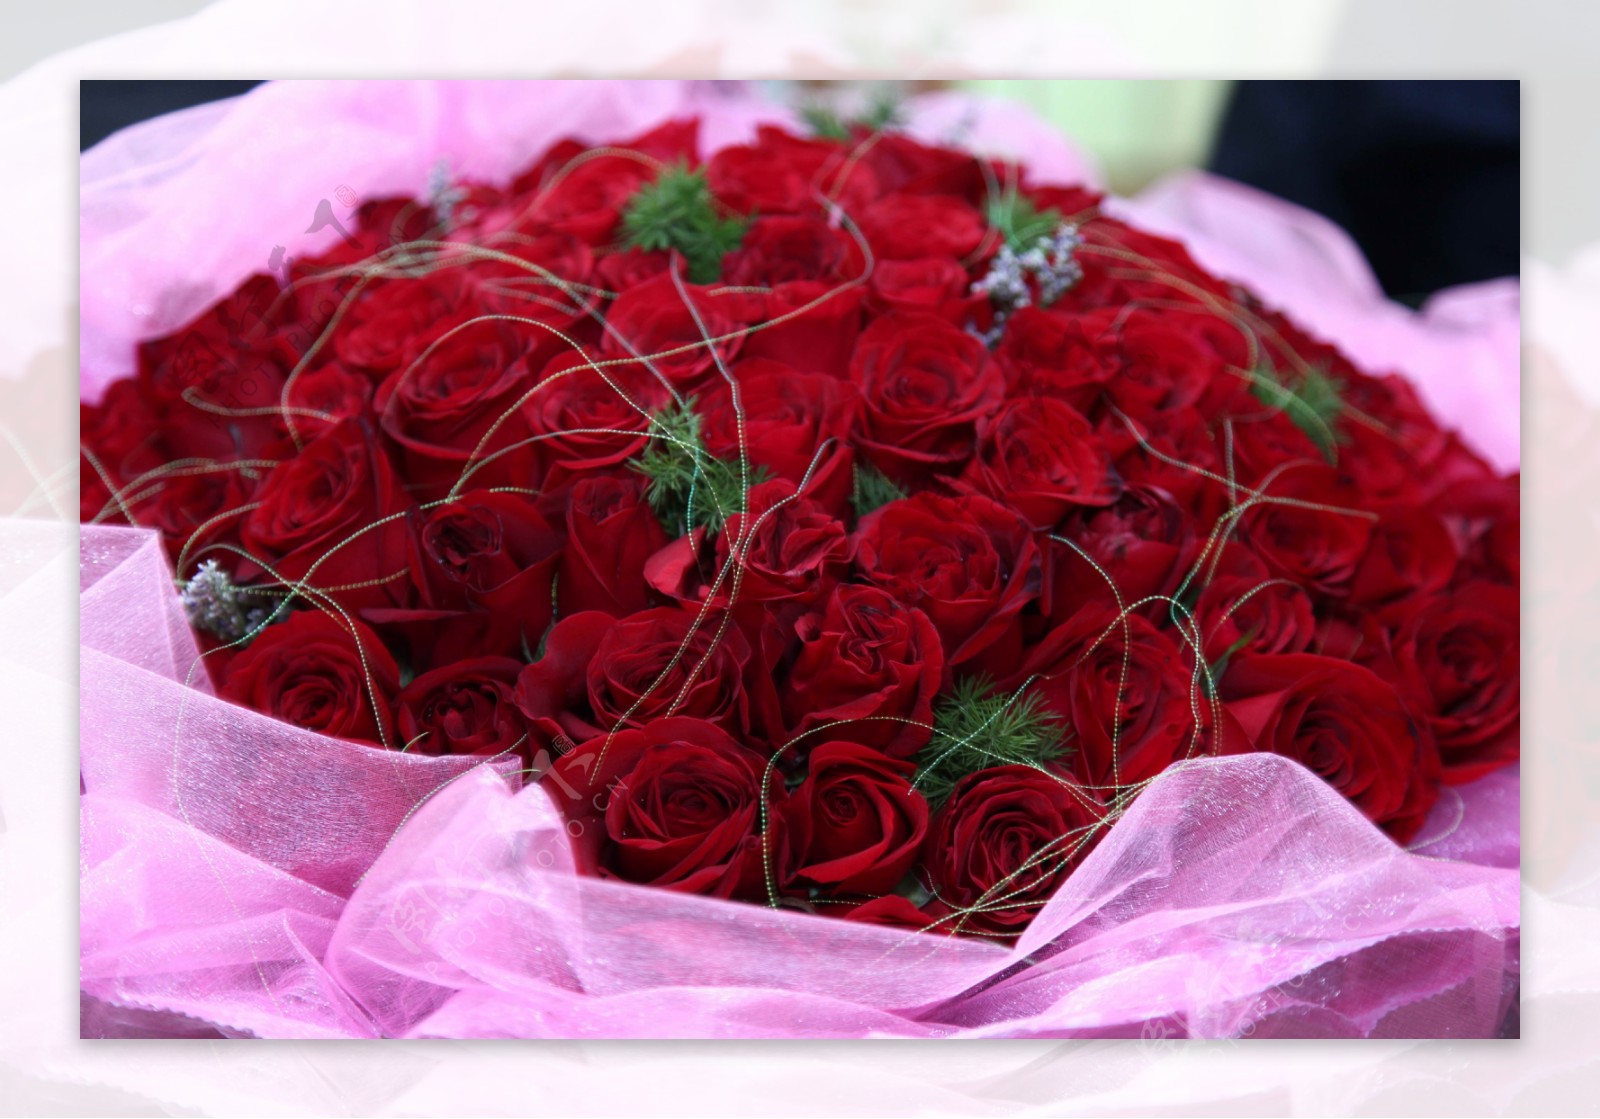 娇艳的红玫瑰花束图片